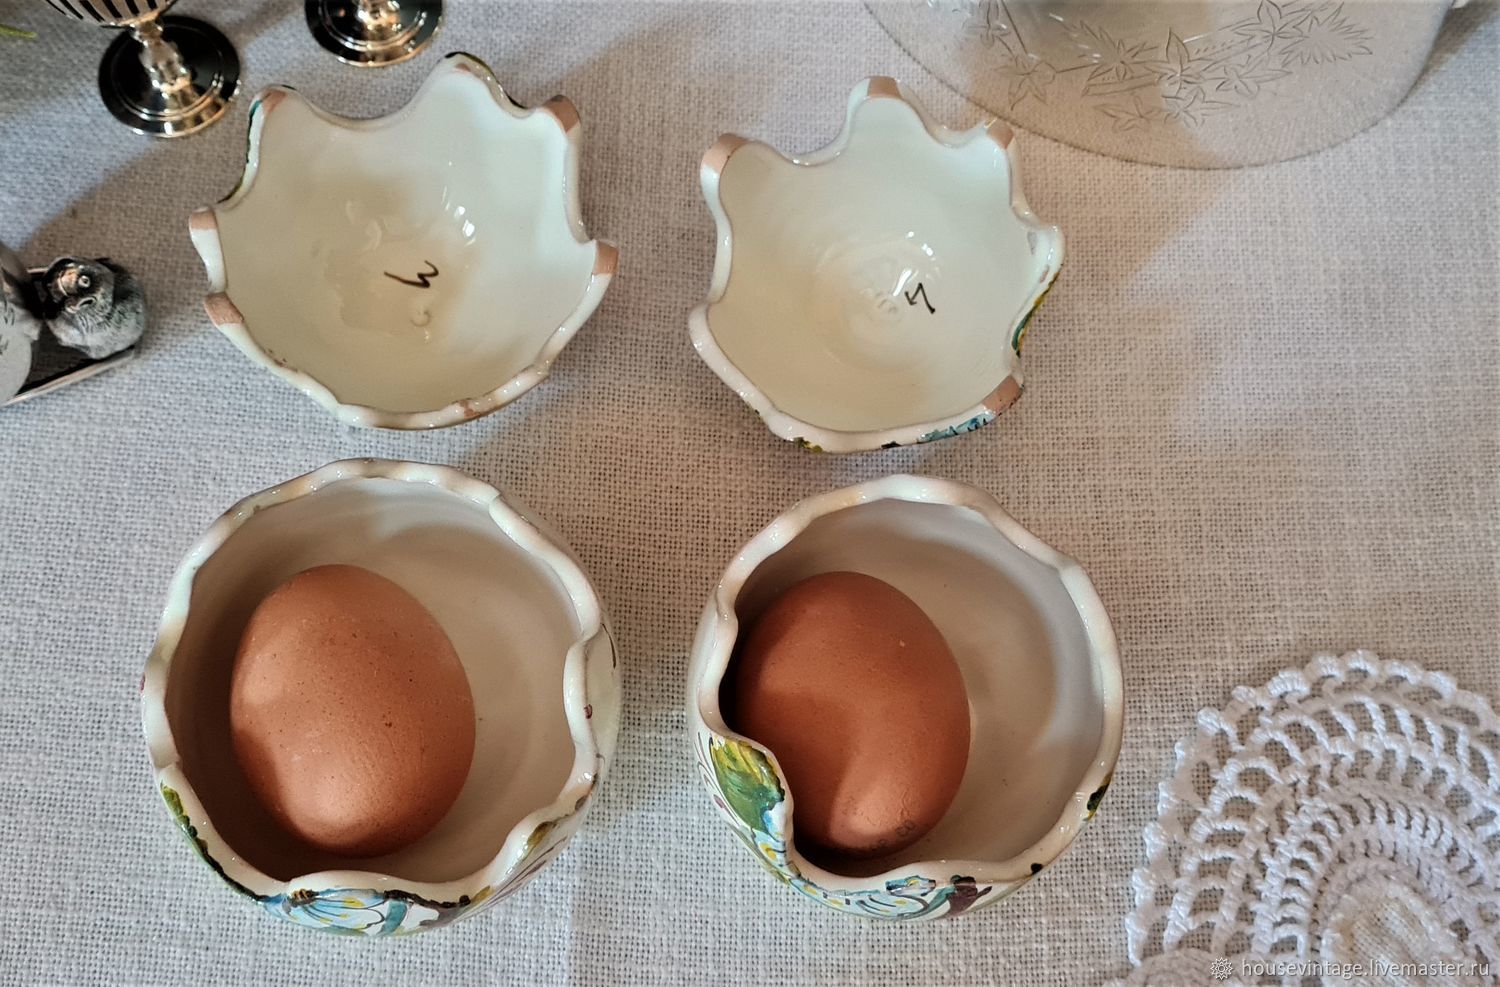 Vintage ceramic eggs